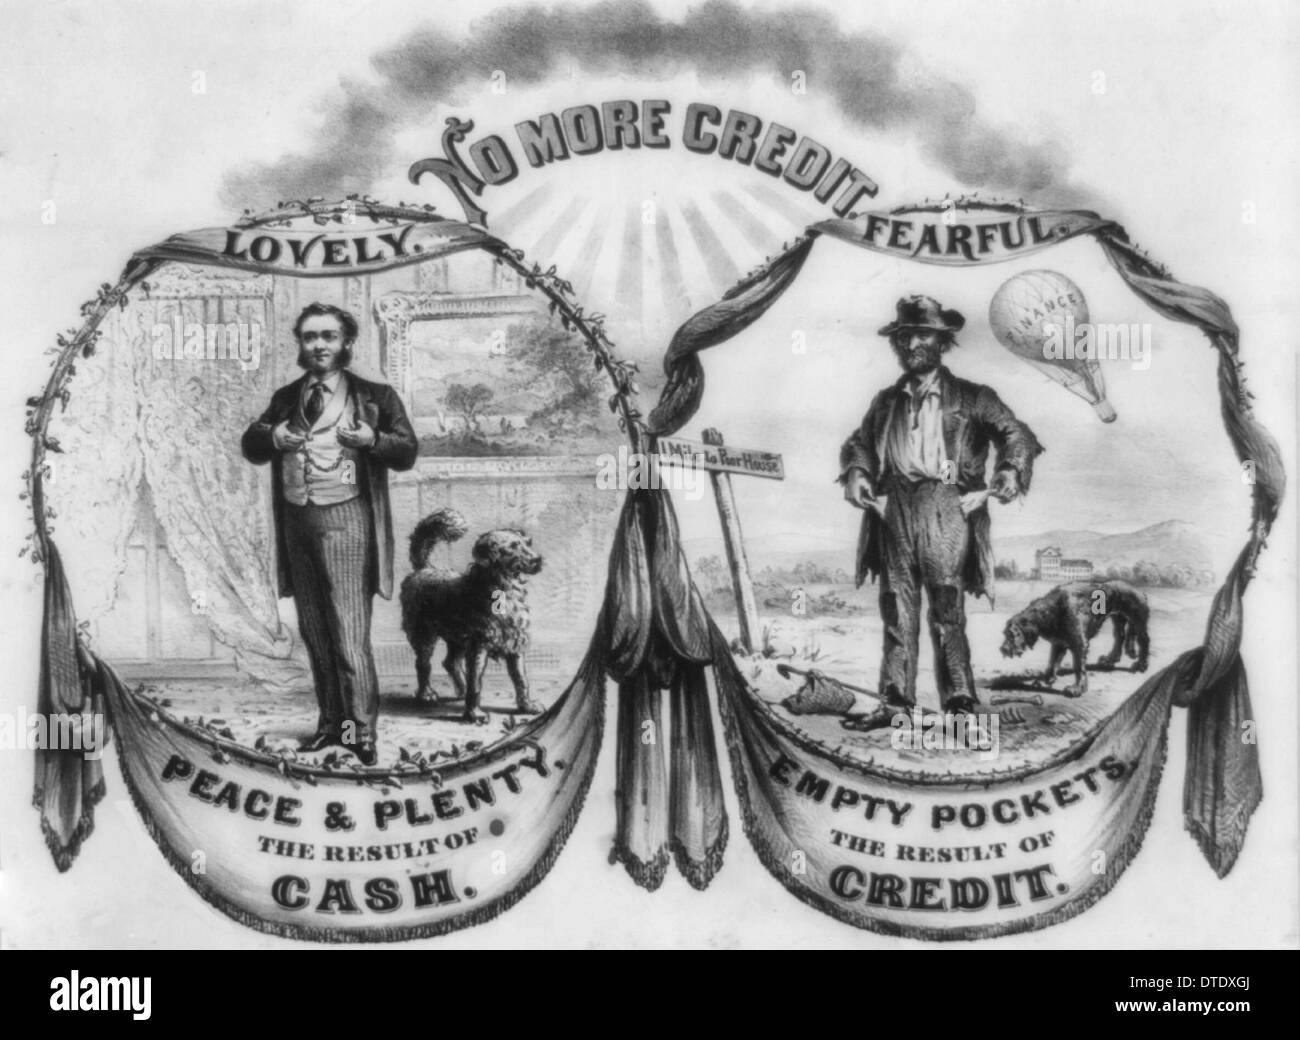 Keine weitere Gutschrift - Frieden und viel - das Ergebnis von Bargeld. Leere Taschen - das Ergebnis von Kredit - politische Anzeige, ca. 1885 Stockfoto